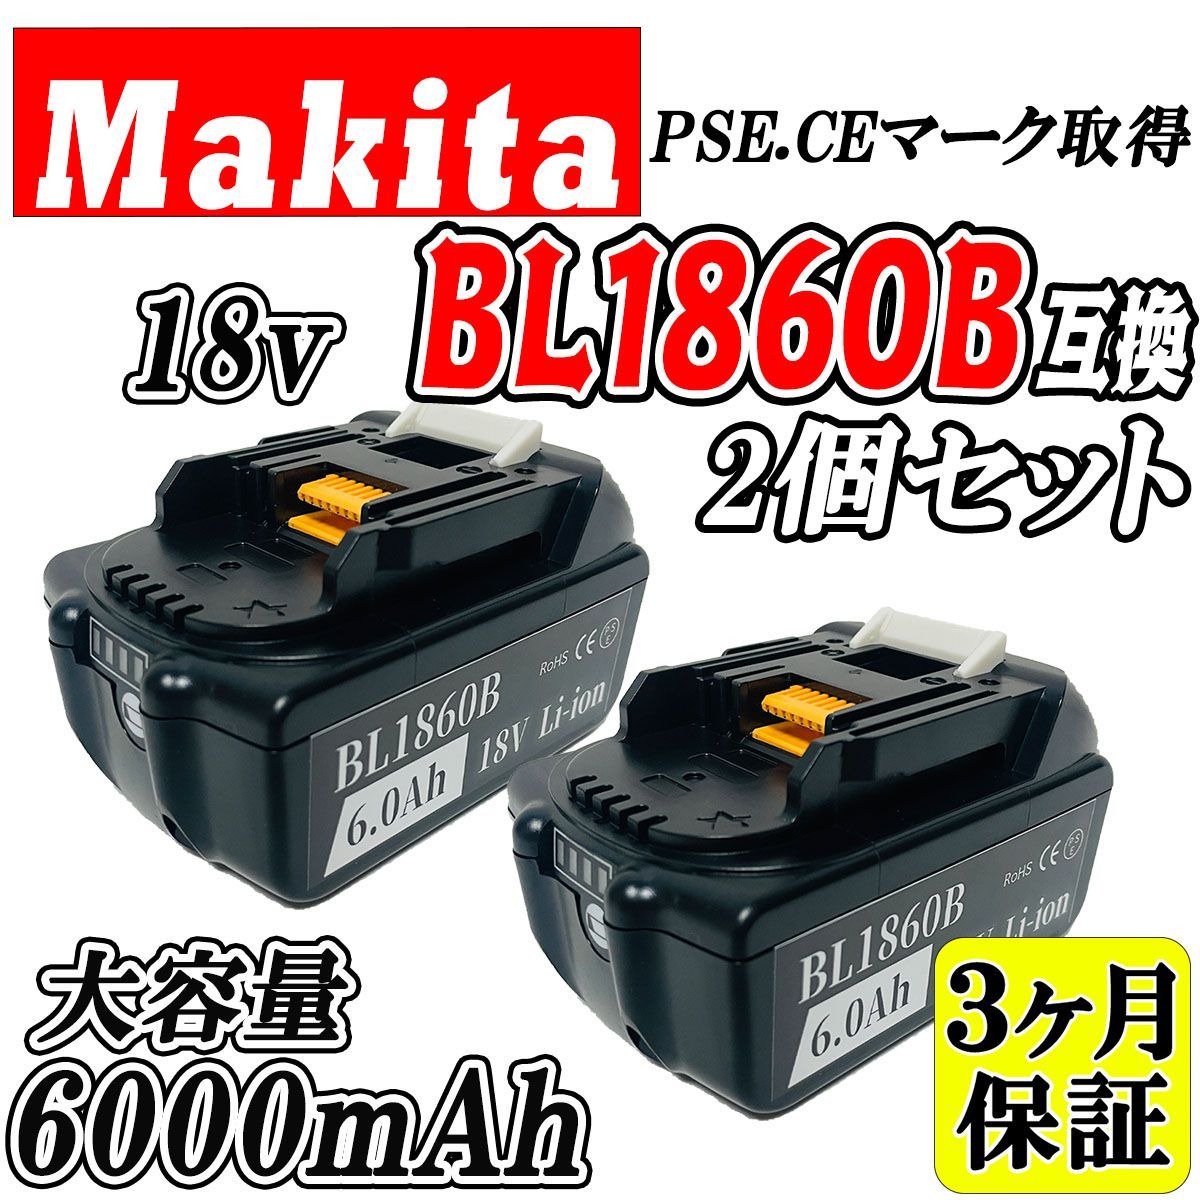 3ヶ月保証】マキタ 18V BL1860B 2個セット 大容量 6.0Ah 互換 ...